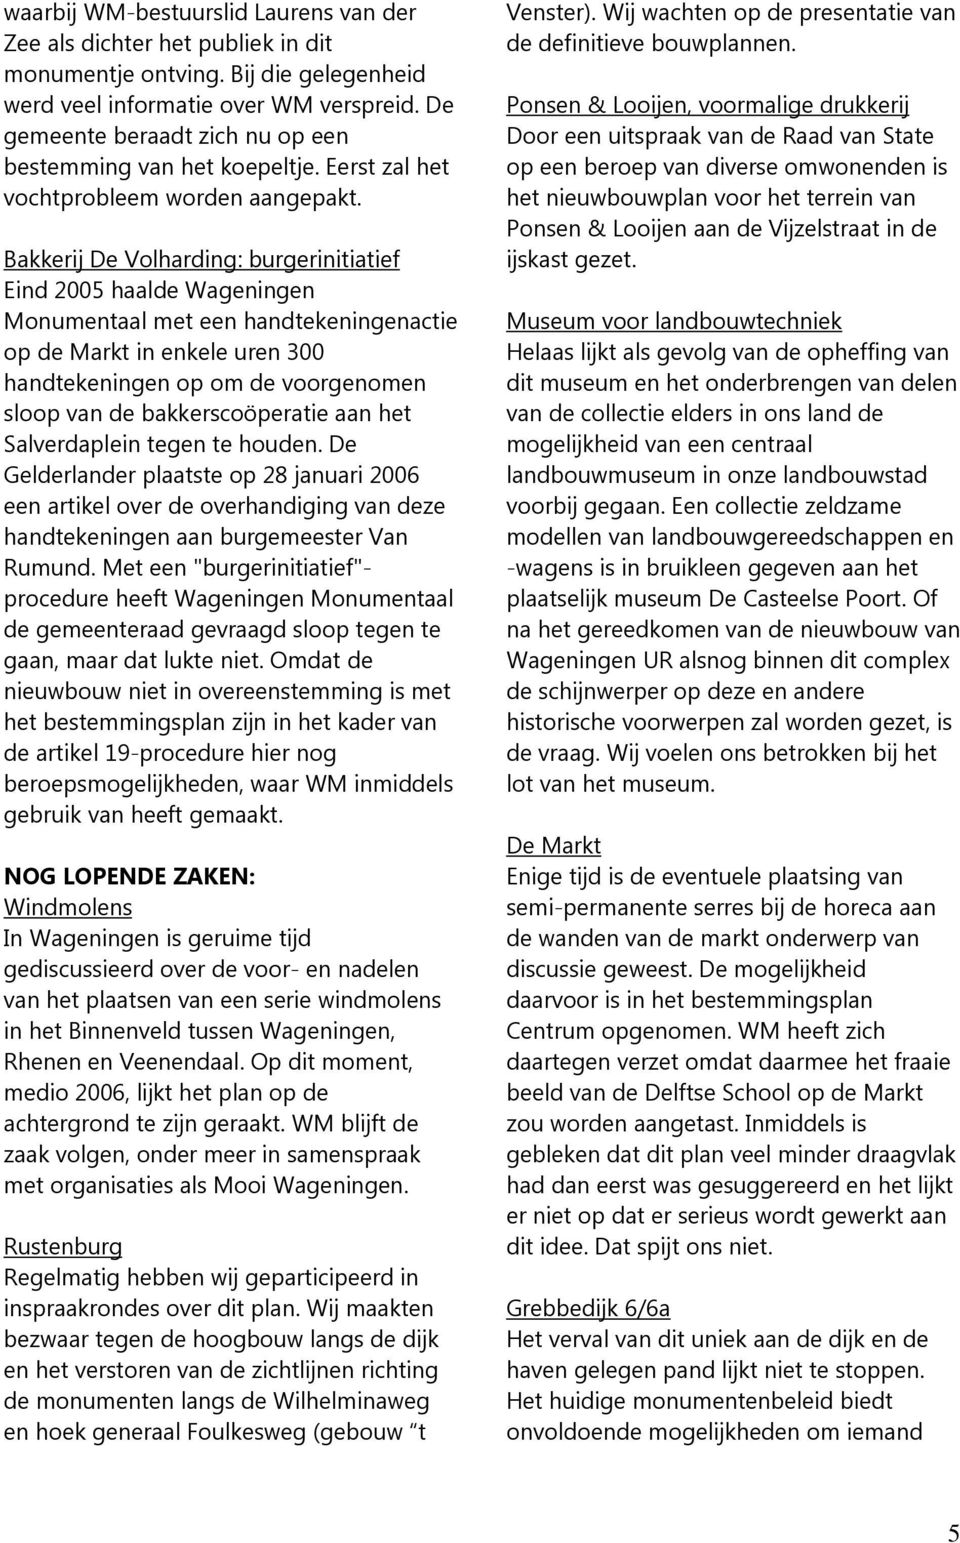 Bakkerij De Volharding: burgerinitiatief Eind 2005 haalde Wageningen Monumentaal met een handtekeningenactie op de Markt in enkele uren 300 handtekeningen op om de voorgenomen sloop van de